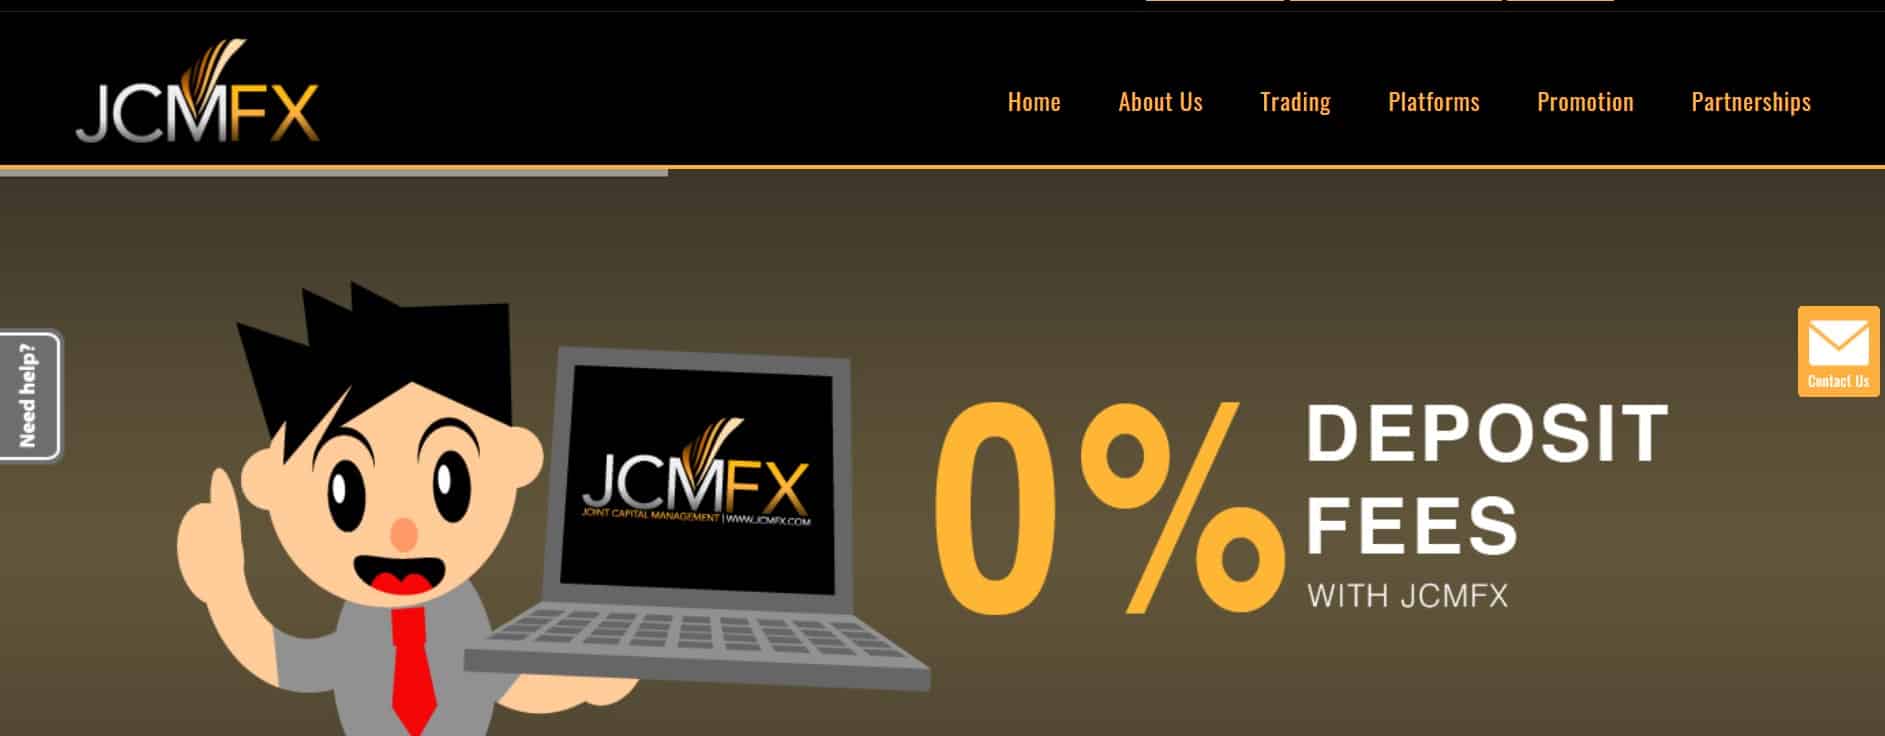 JCMFX website